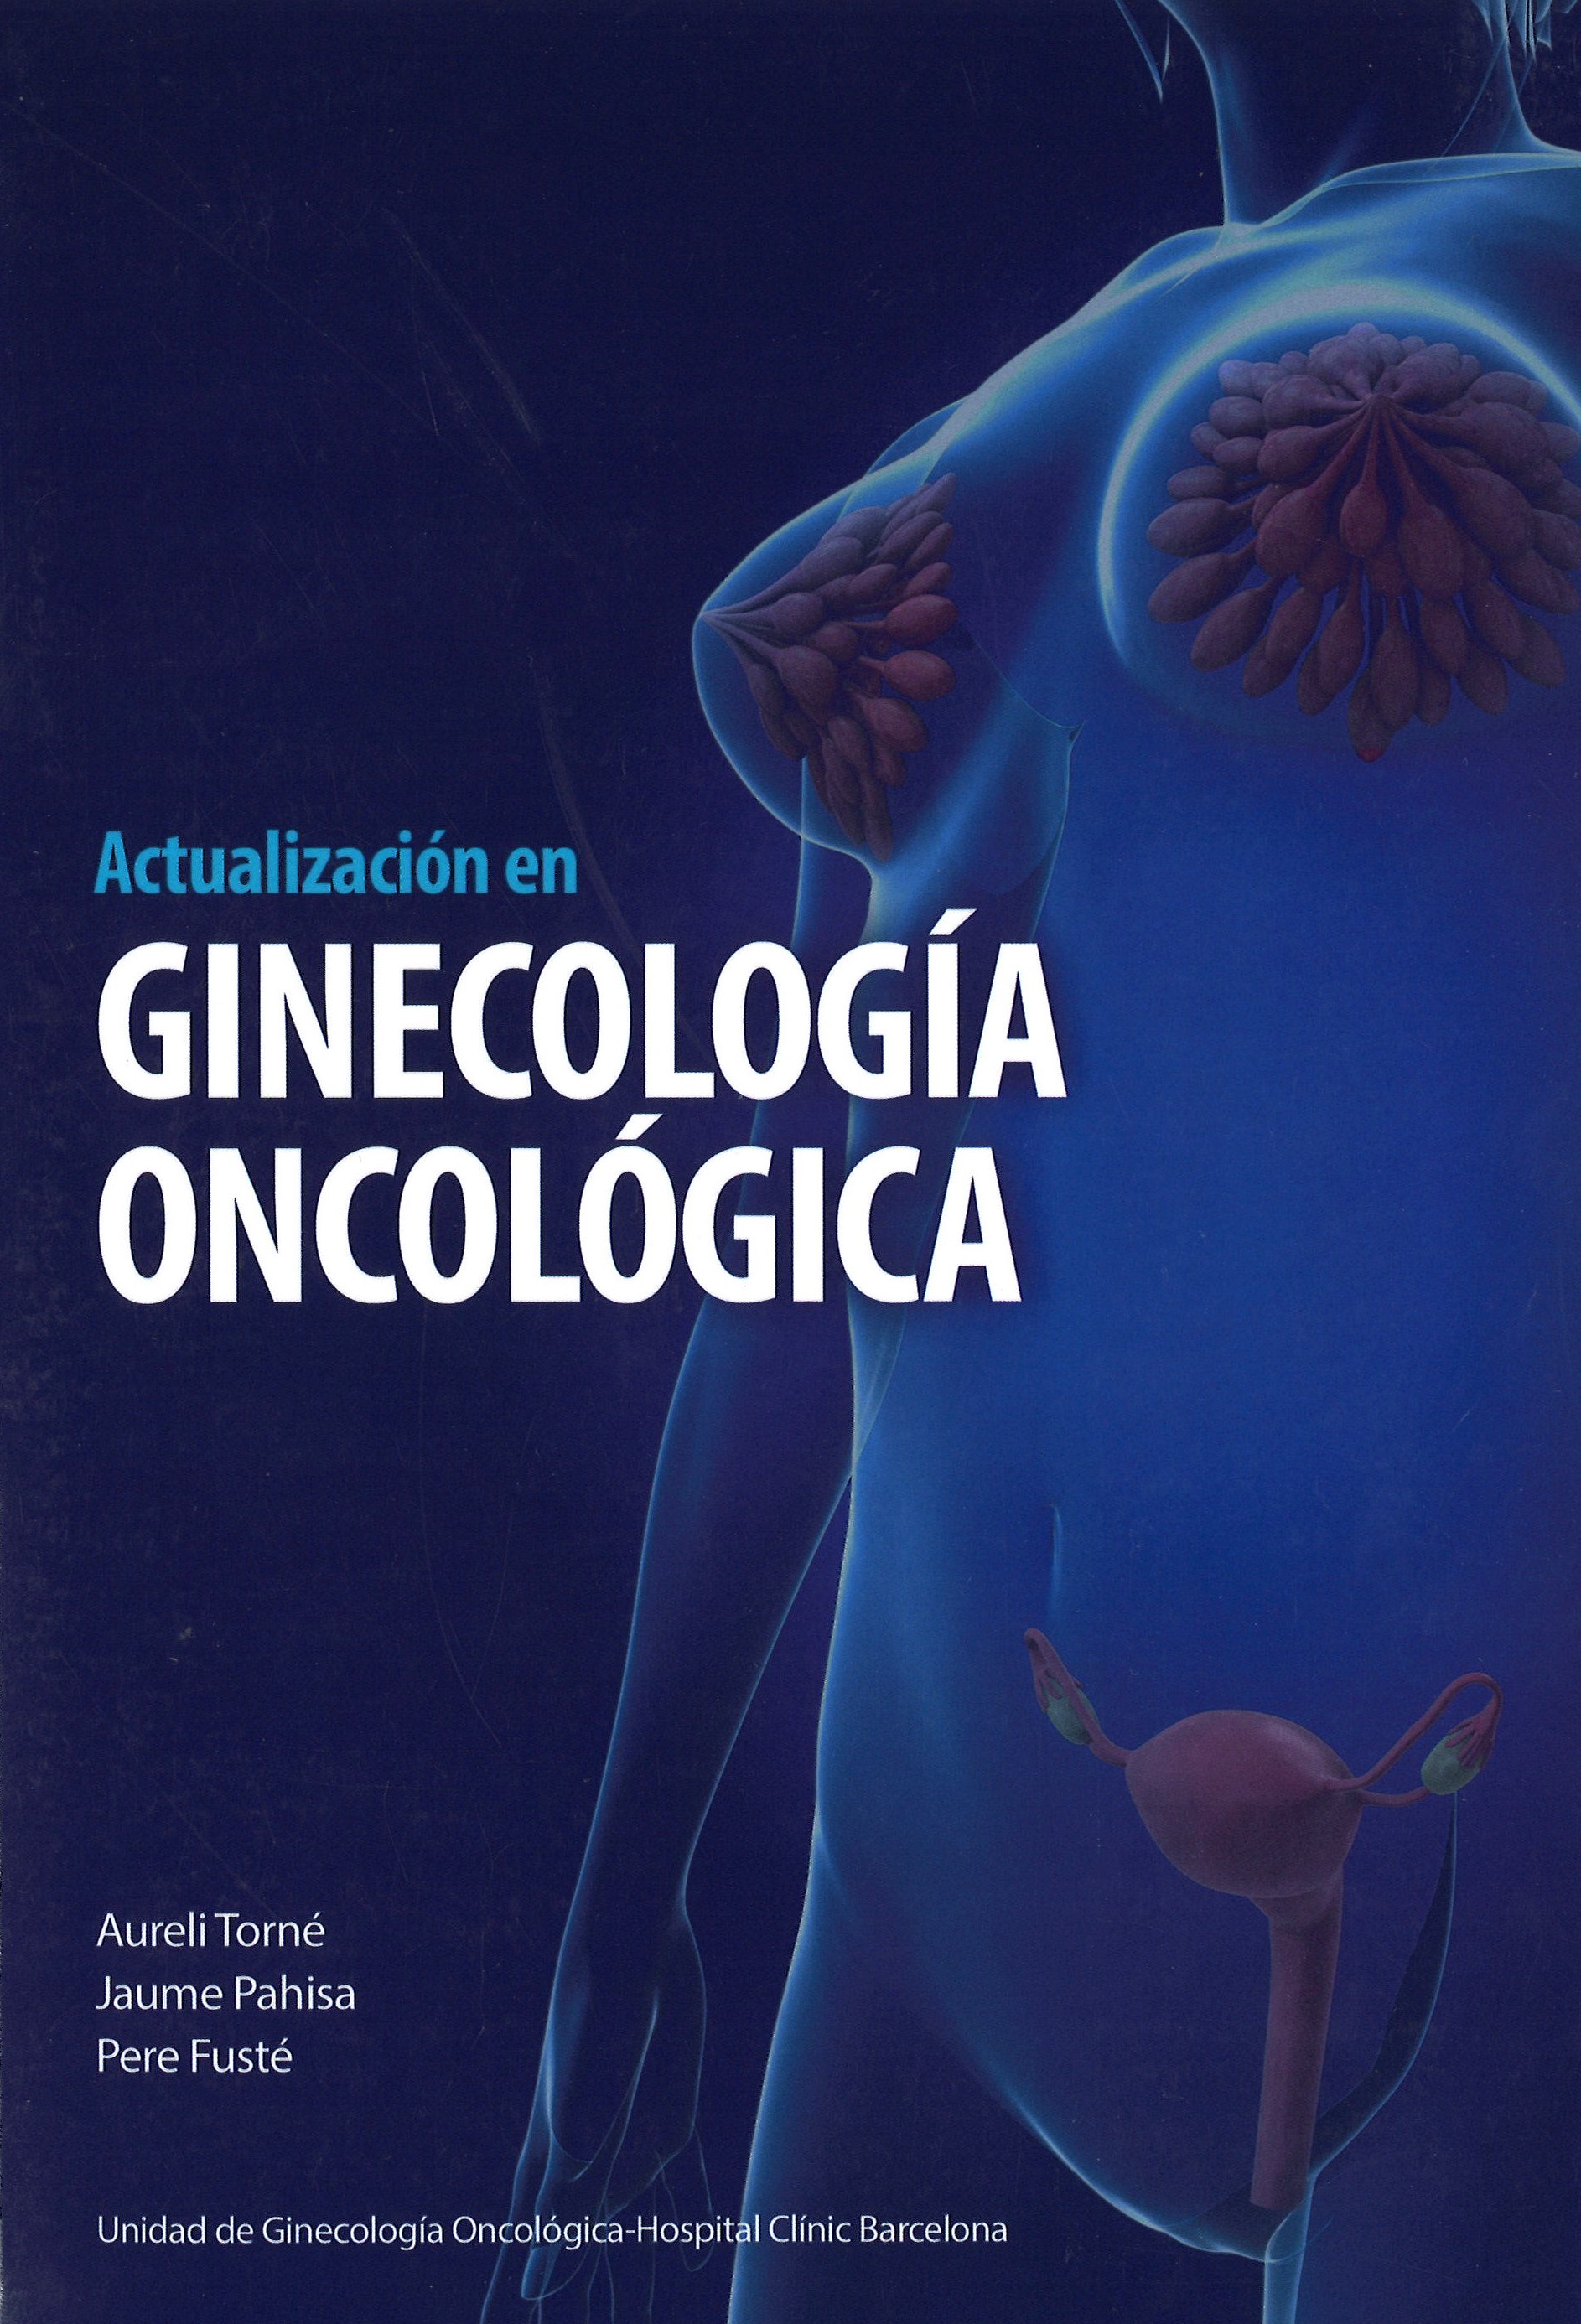 Imagen de portada del libro Ginecología oncológica